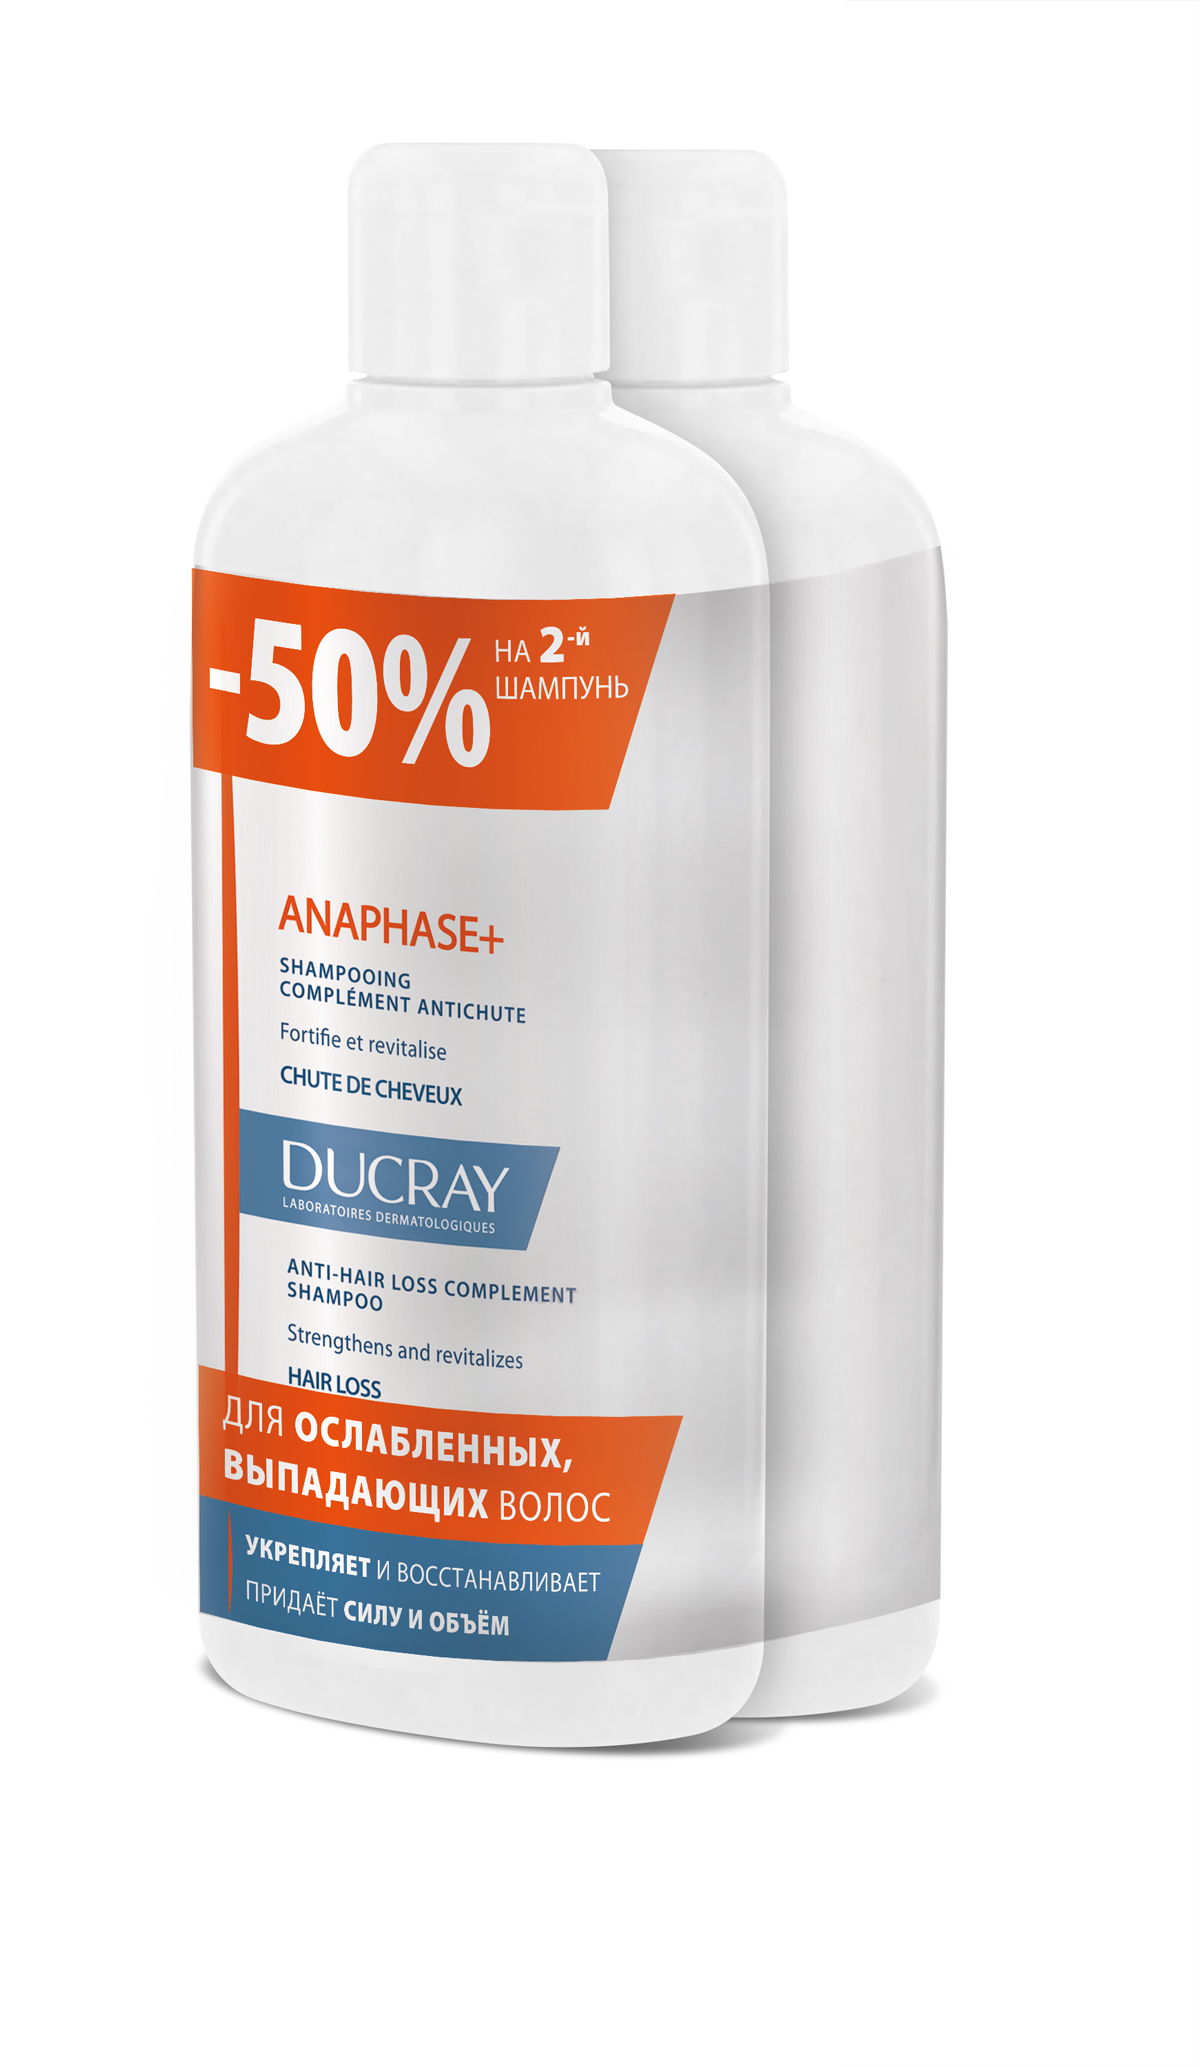 Ducray Набор Анафаз+ Шампунь для ослабленных, выпадающих волос 400 мл 2 шт скидка 50% на второй продукт